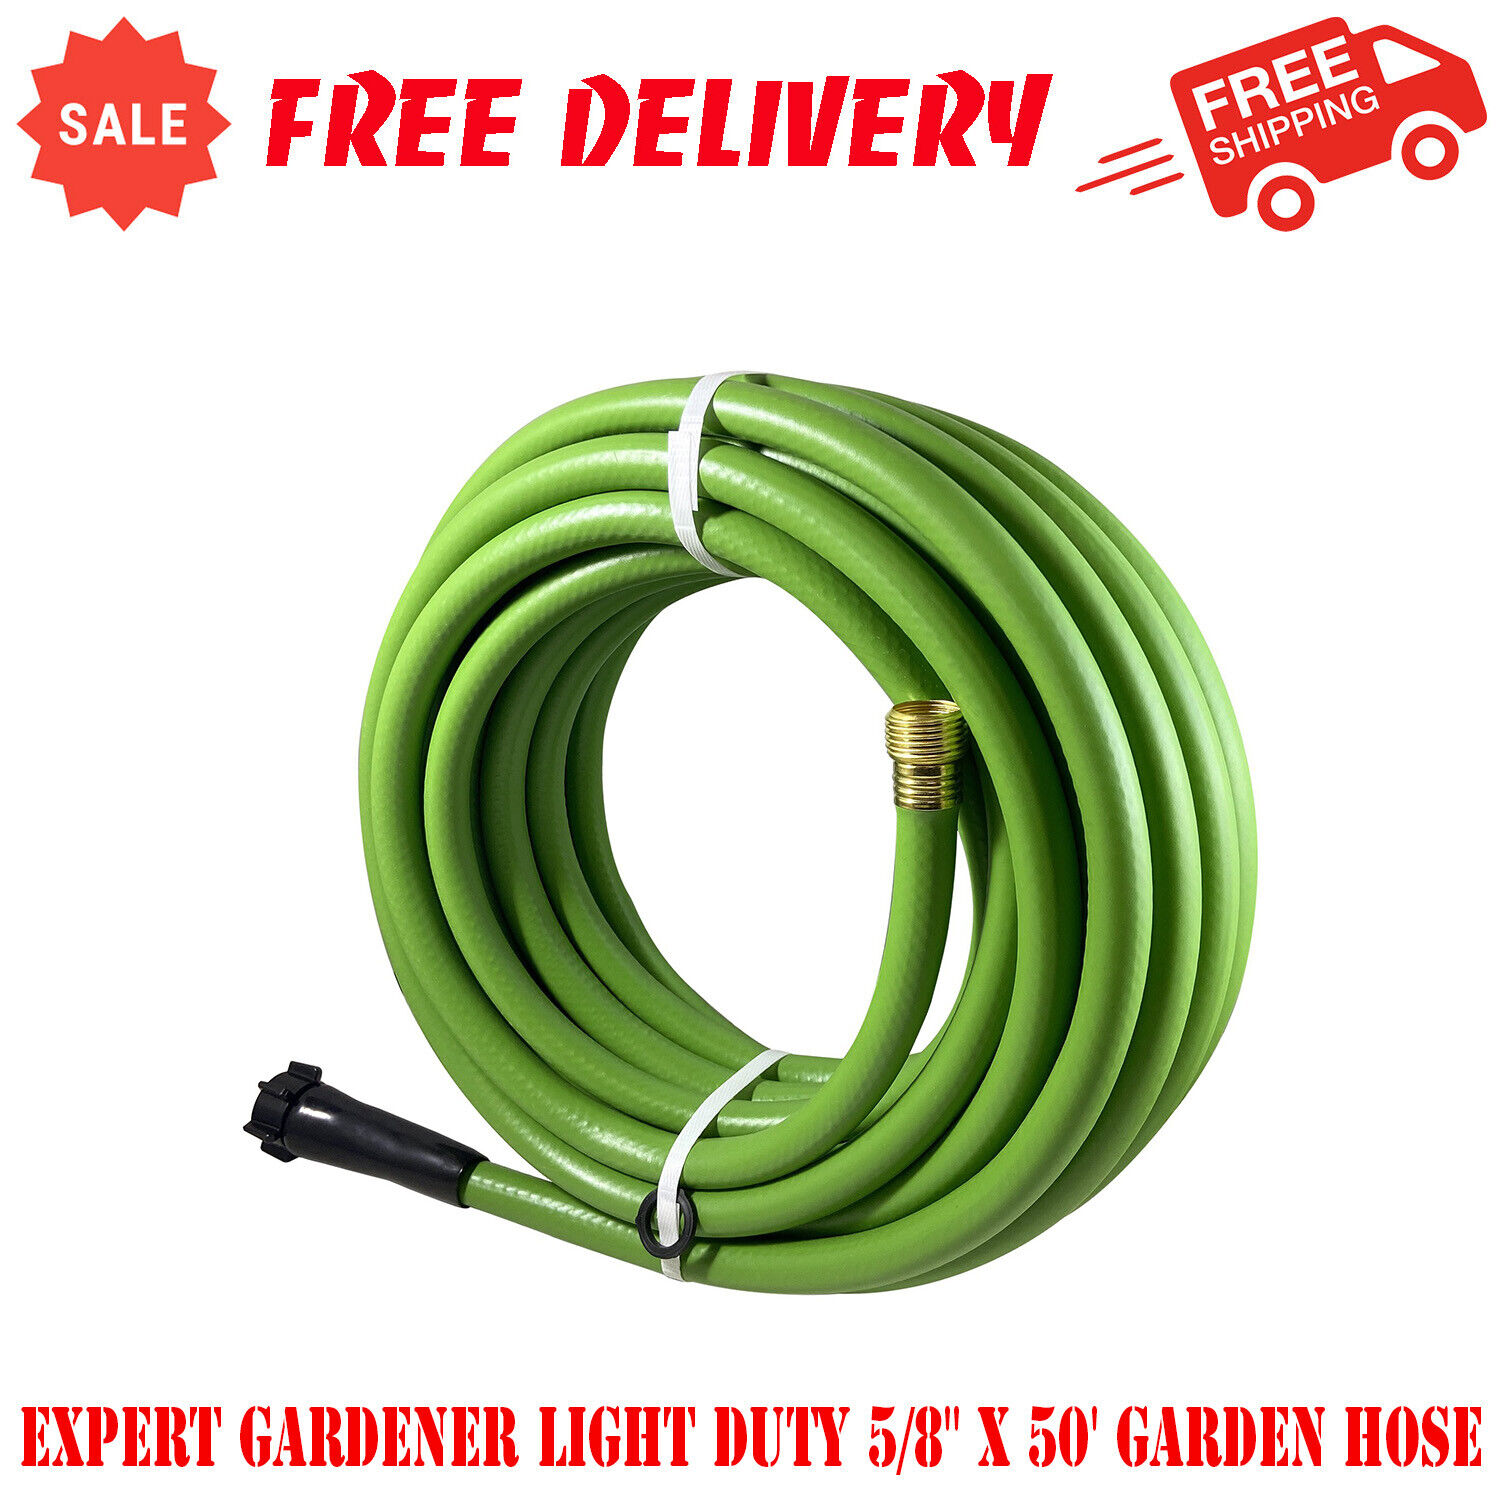 Expert Gardener Light Duty 5/8" x 50' Garden Hose, 3-Ply Con